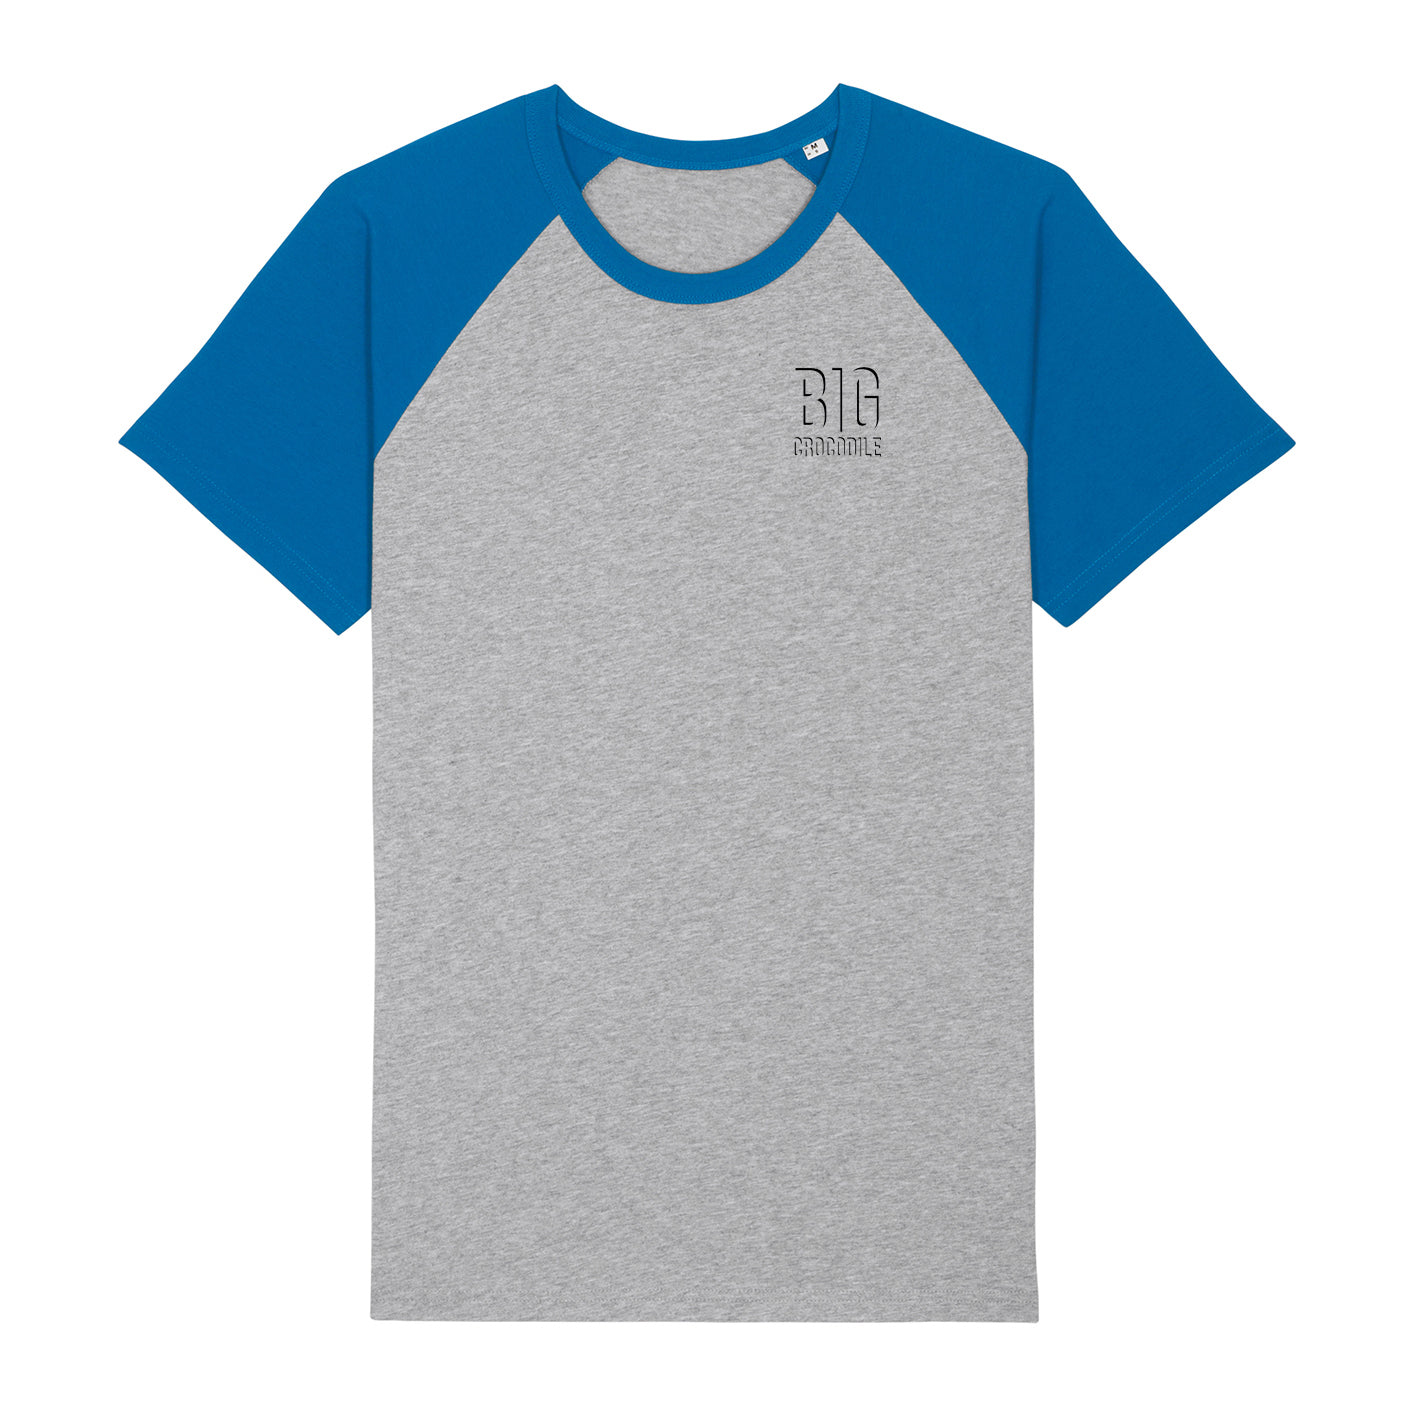 SALE ITEM - Varsity T shirt